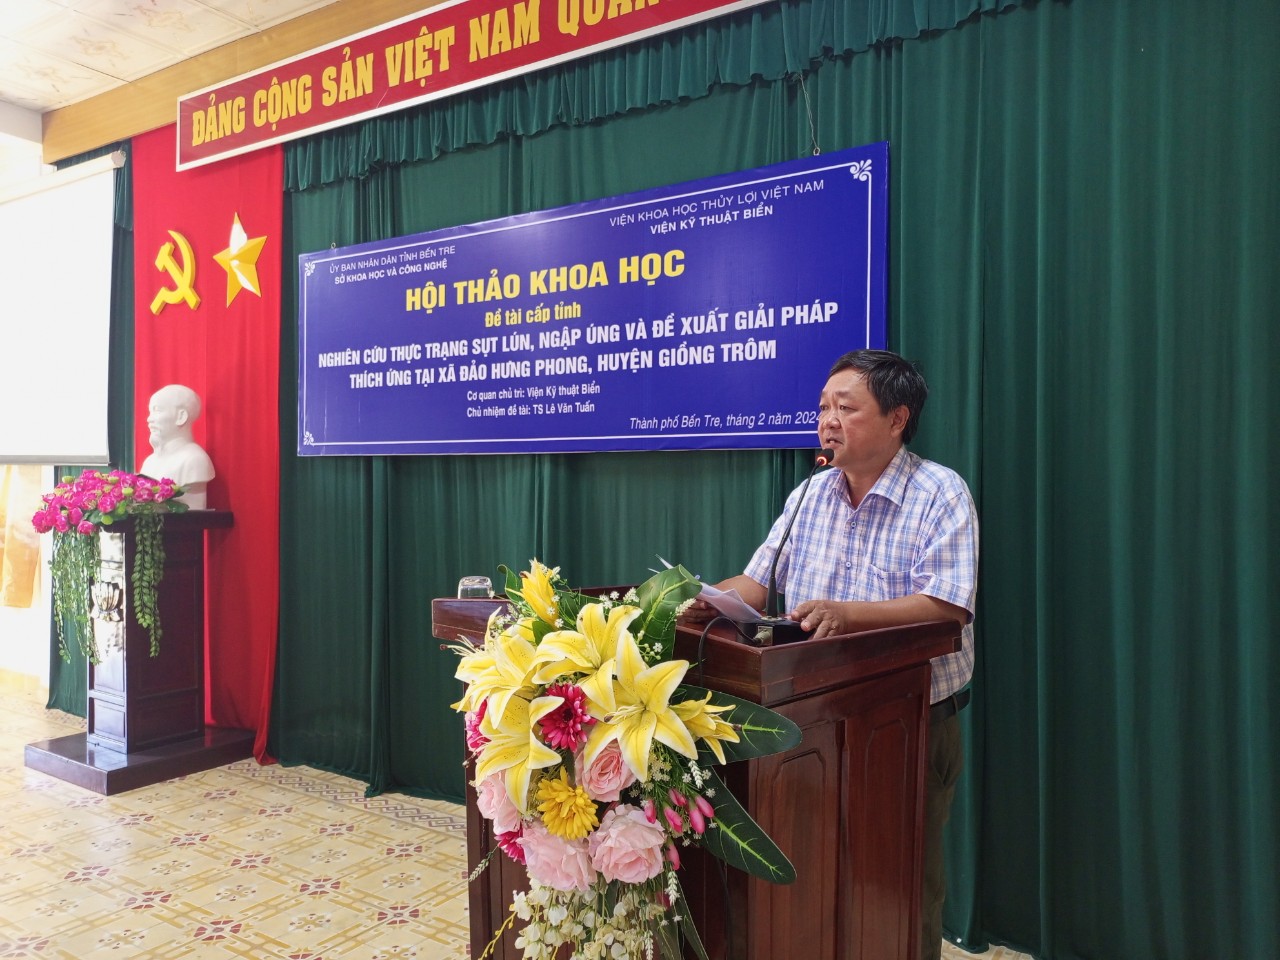 Hội thảo “Nghiên cứu thực trạng sụt lún, ngập úng và đề xuất giải pháp thích ứng tại xã đảo Hưng Phong, huyện Giồng Trôm”